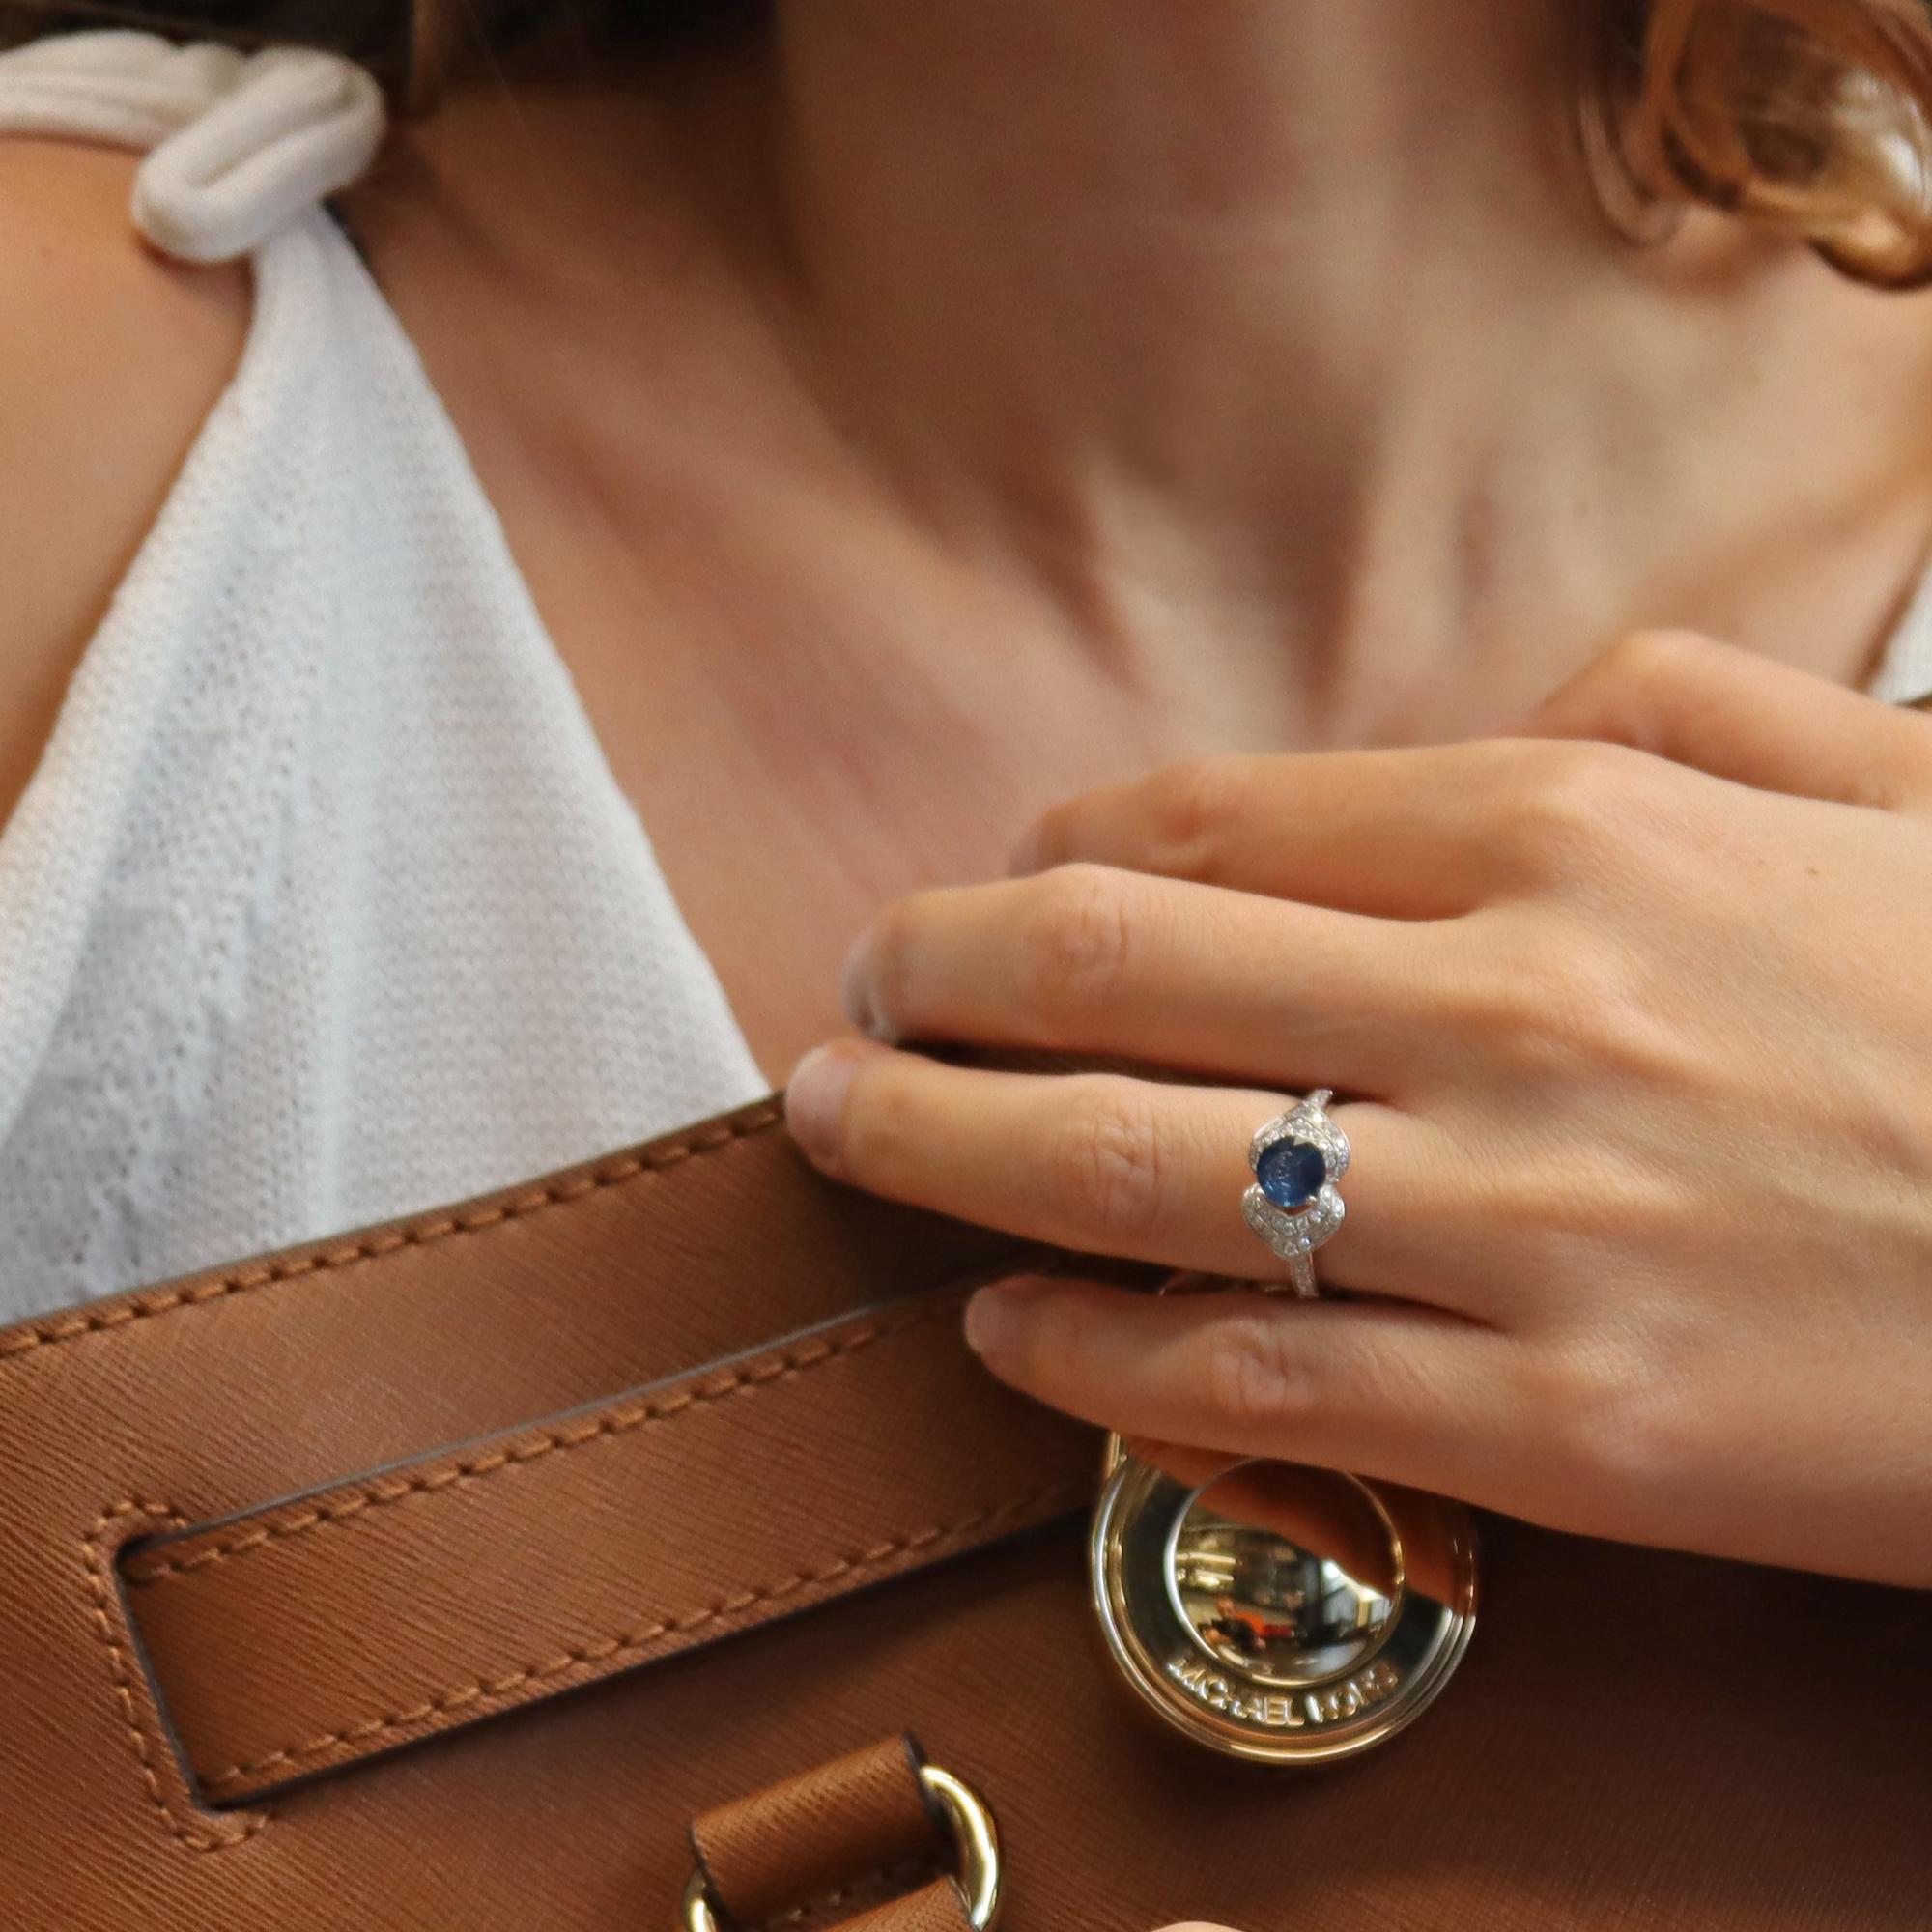 Women's Rachel Koen Round Sapphire Diamond Ring 18K White Gold 1.5 Cttw For Sale